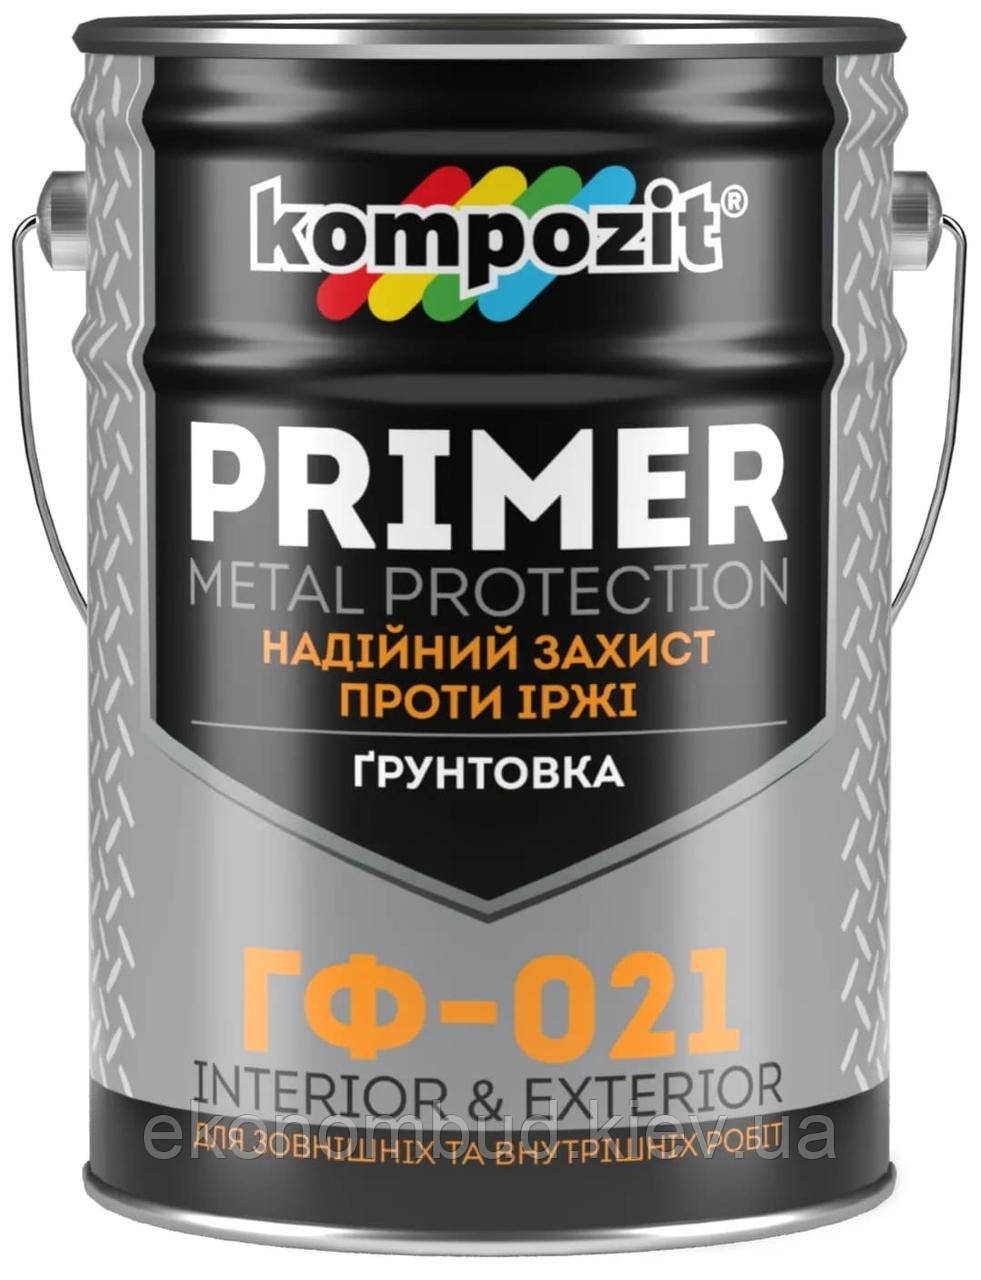 Ґрунтовка ГФ-021 Kompozit® (Колір: Чорний, Фасування: 25 кг)